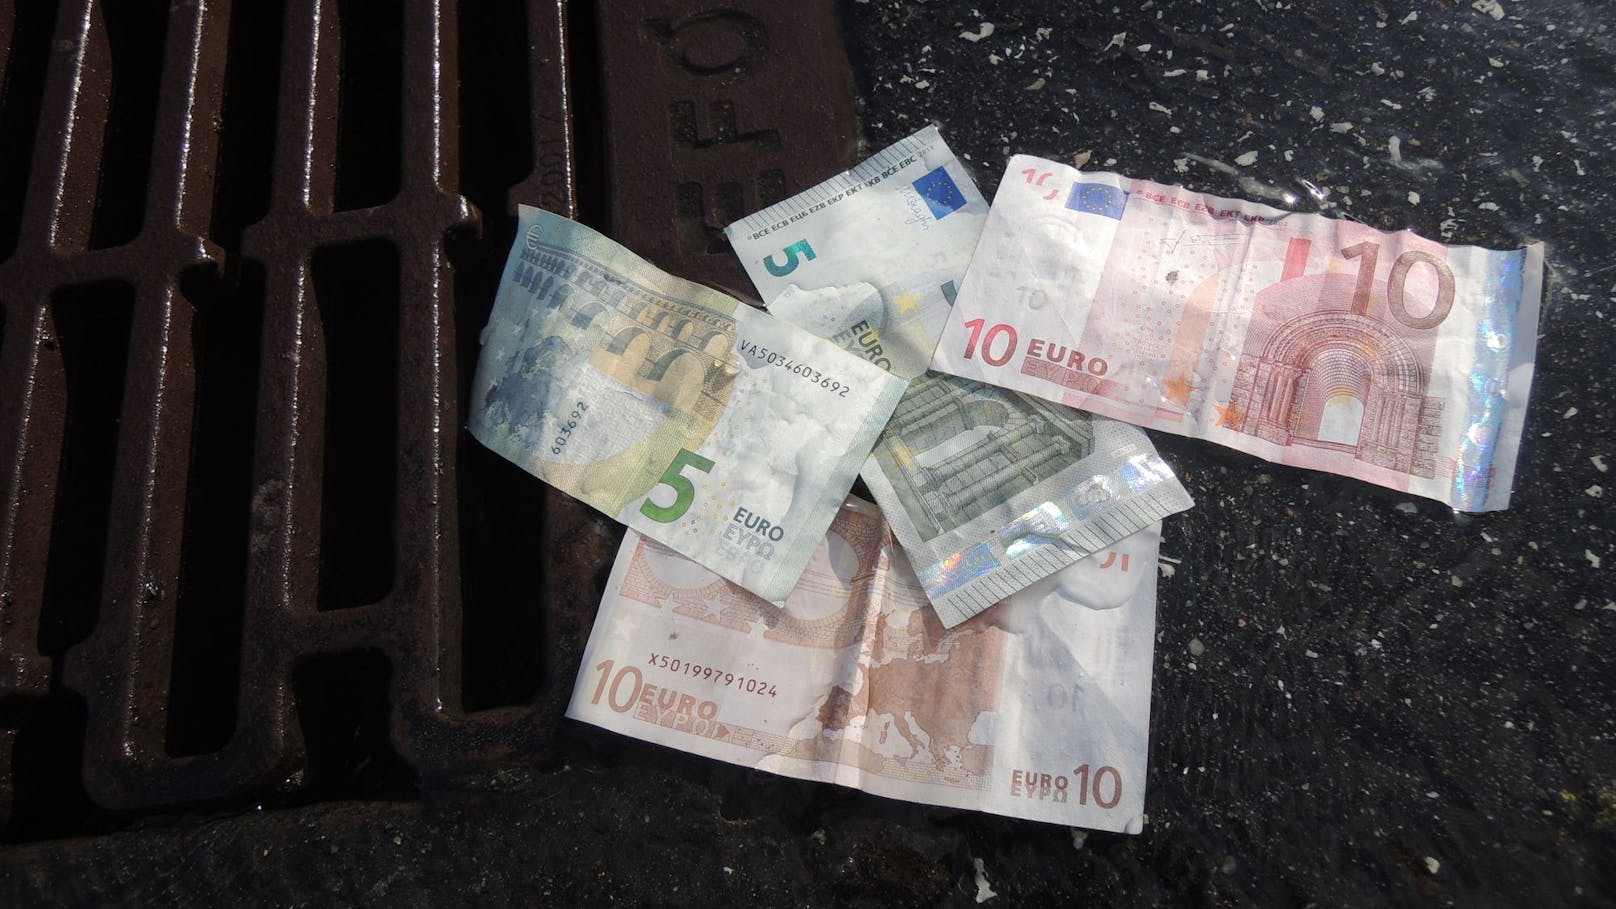 Plötzlich lagen Tausende Euro auf der Straße